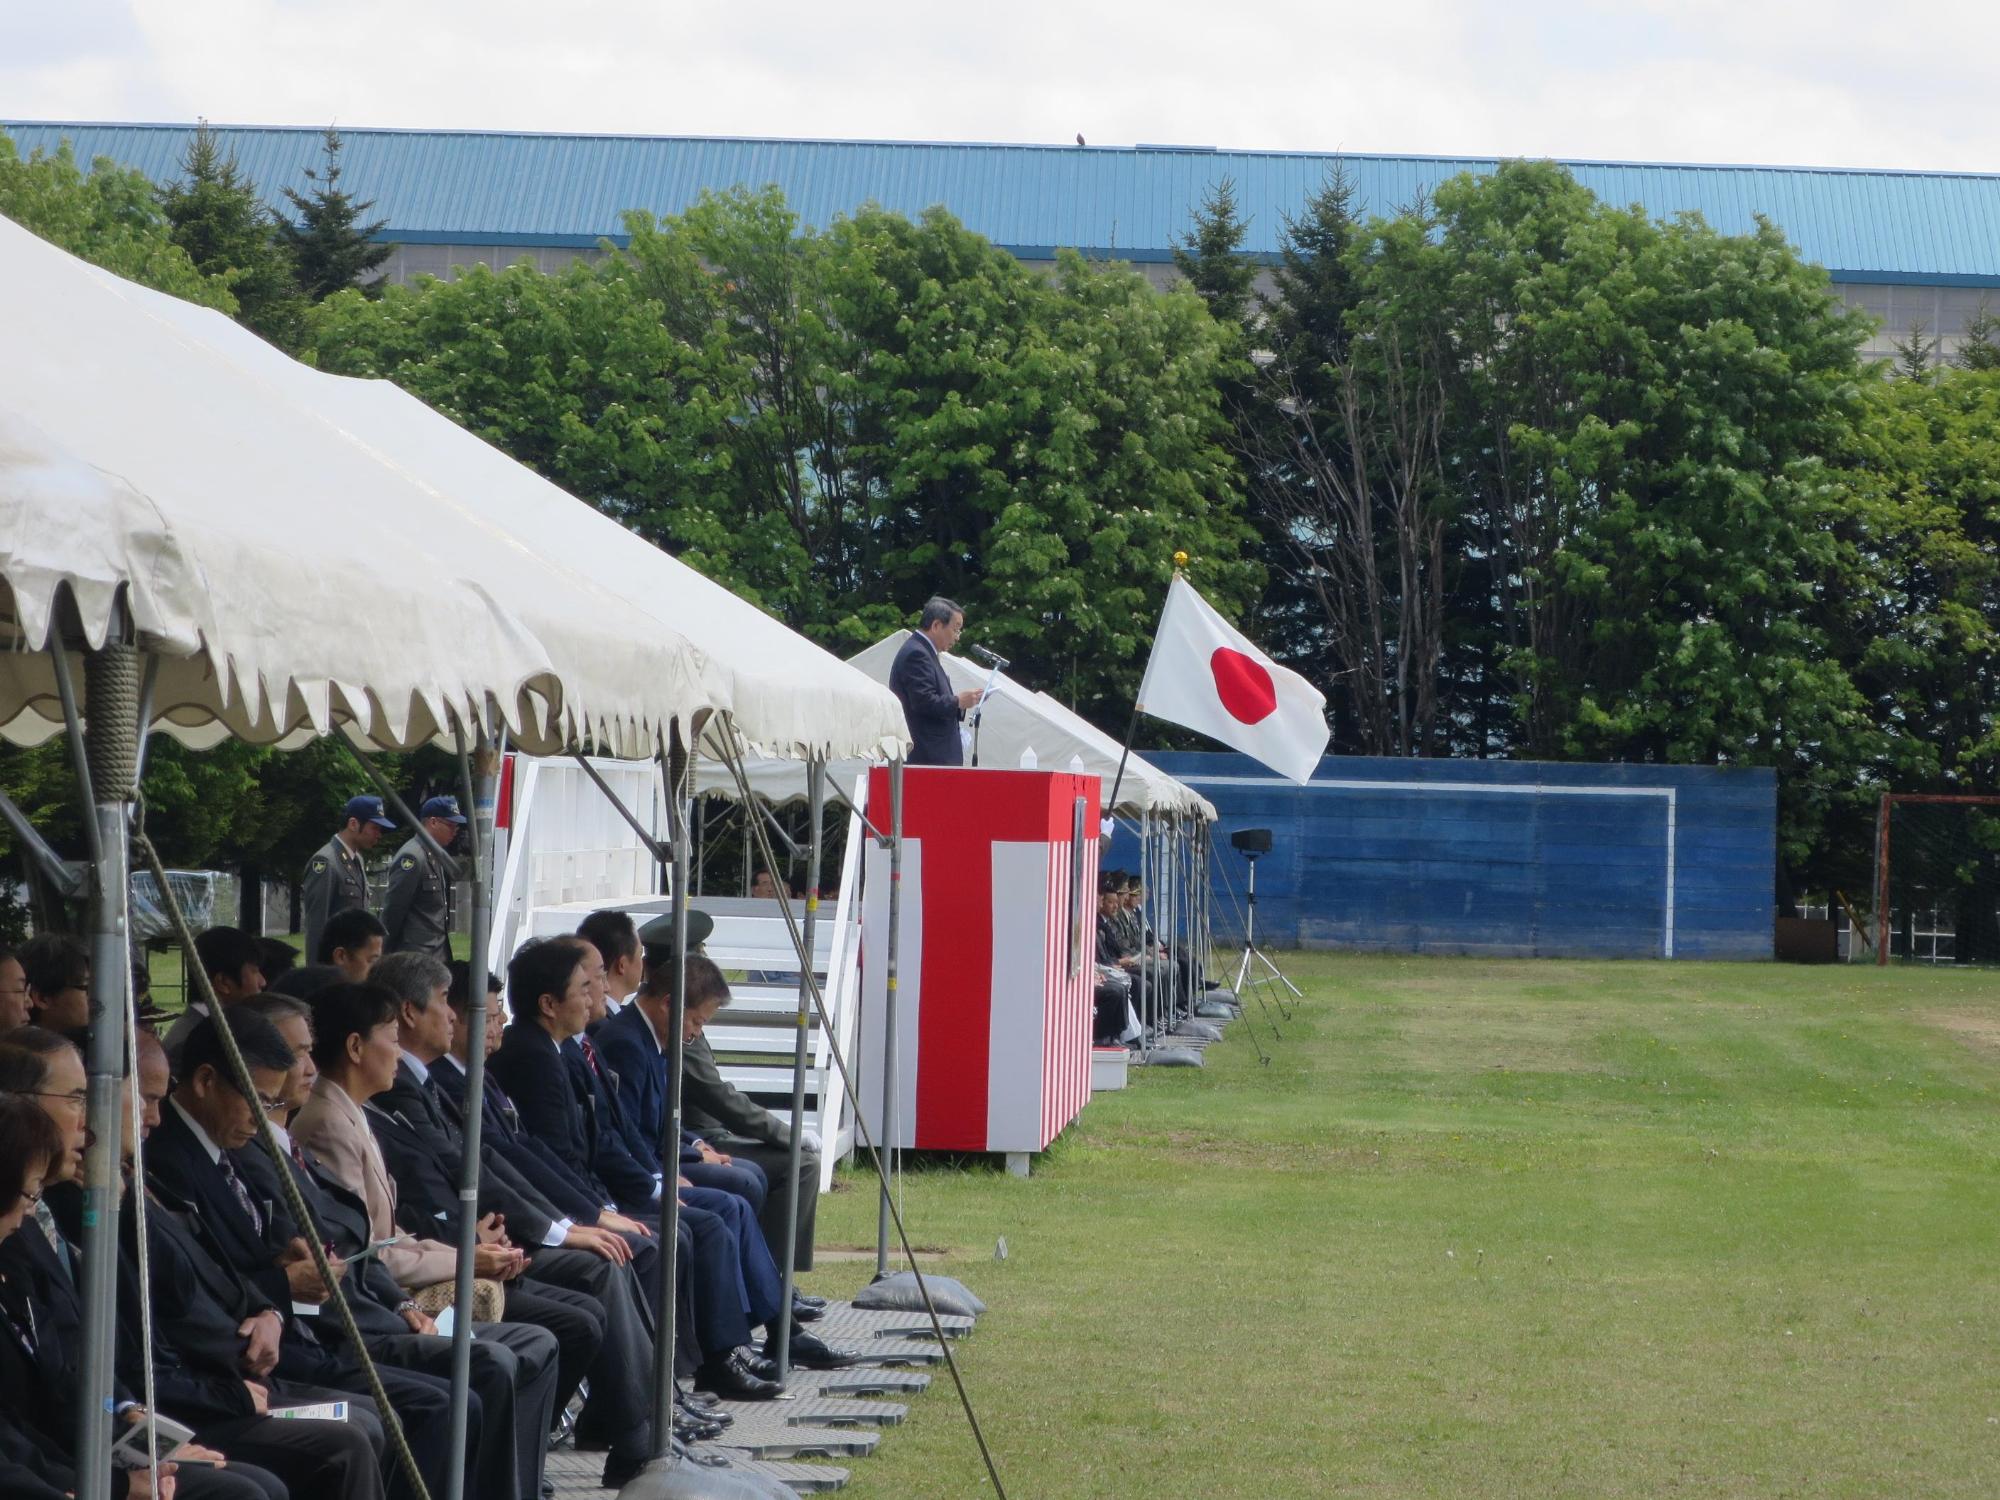 「北部方面後方支援隊創隊18周年記念行事」にて挨拶をしている原田市長の写真